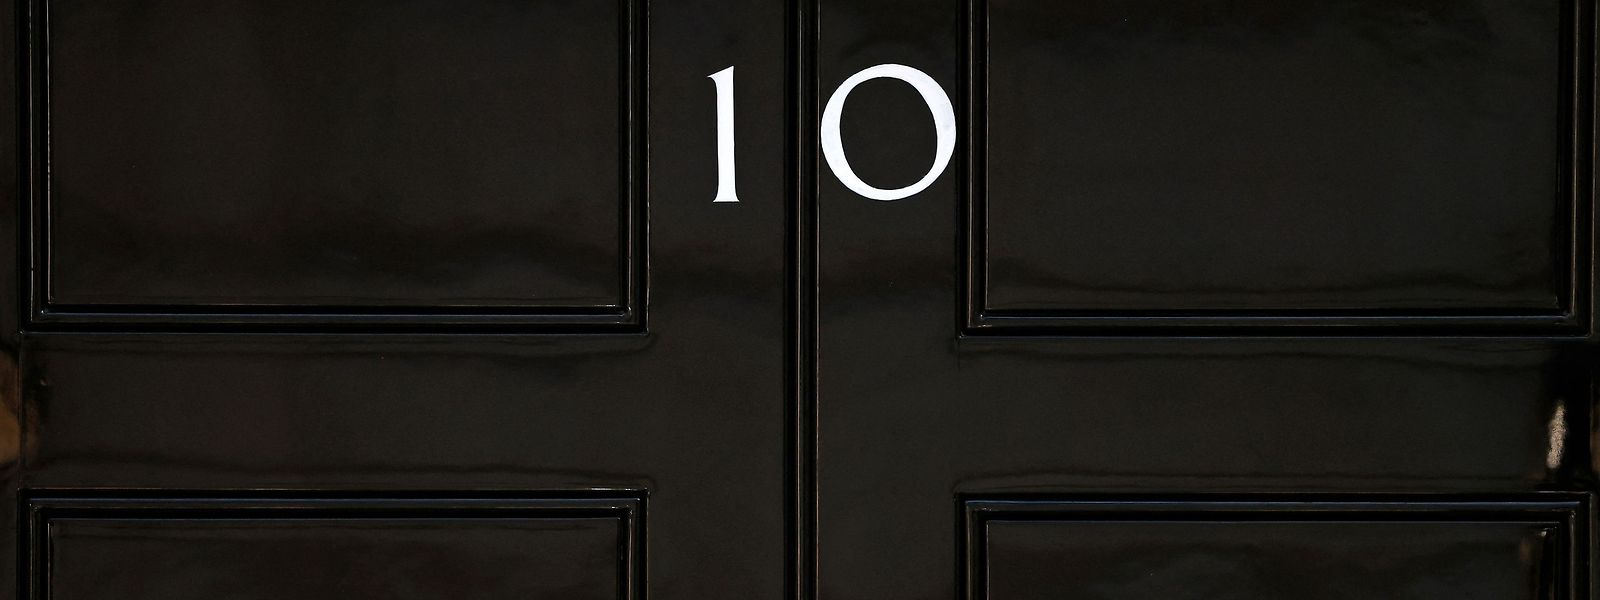 Wer künftig in die Downing Street 10 einziehen wird, ist derzeit noch völlig offen.